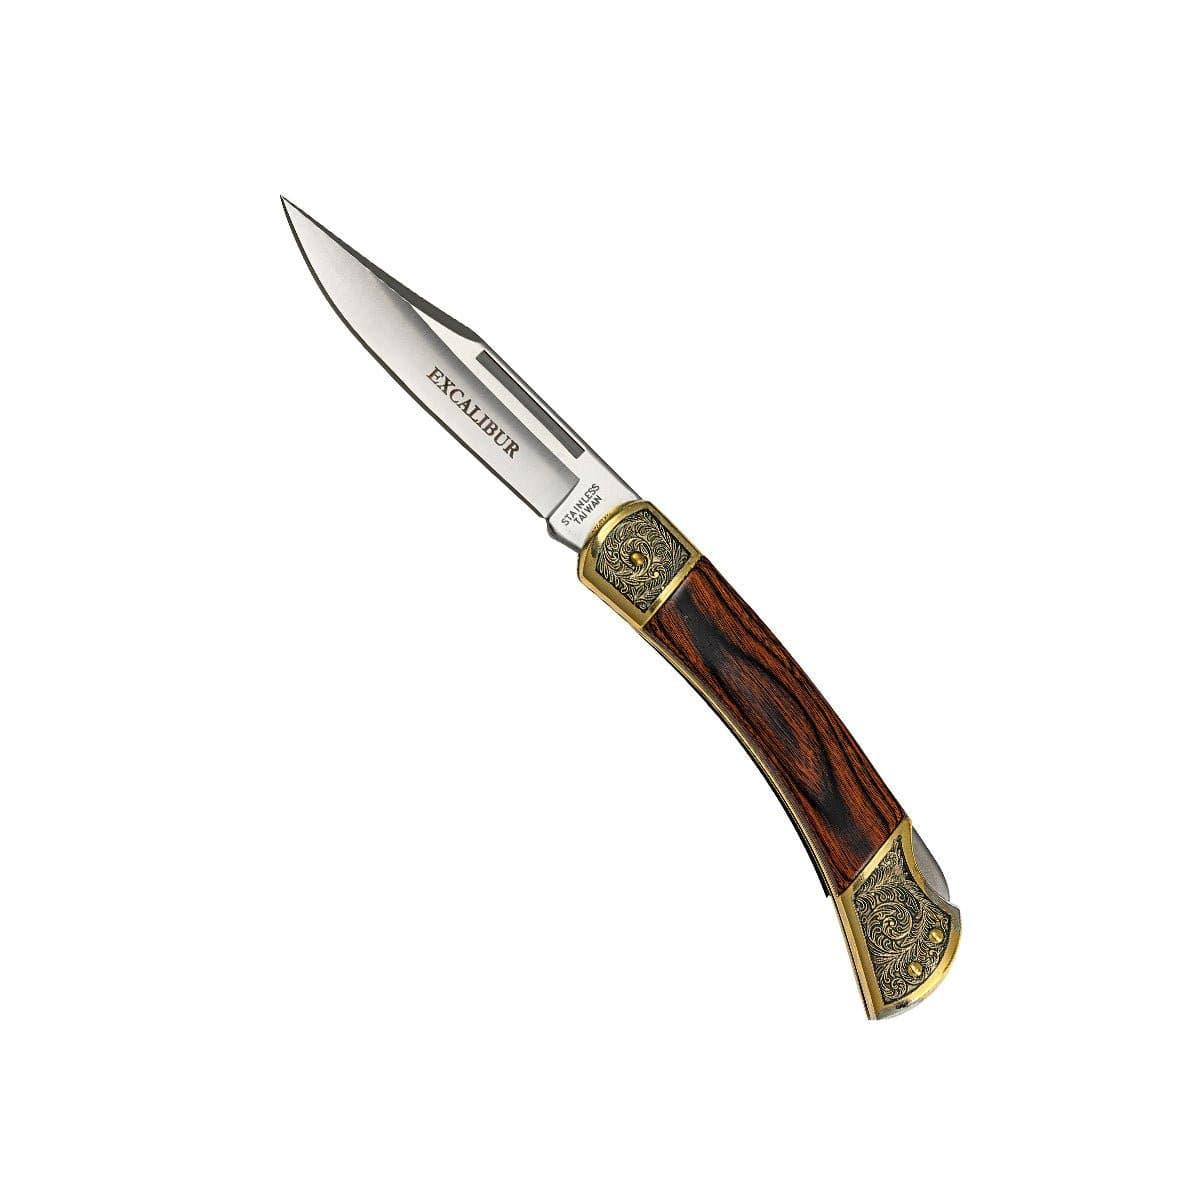 Excalibur Royal King - Folding Pocket Knife - Knife Store